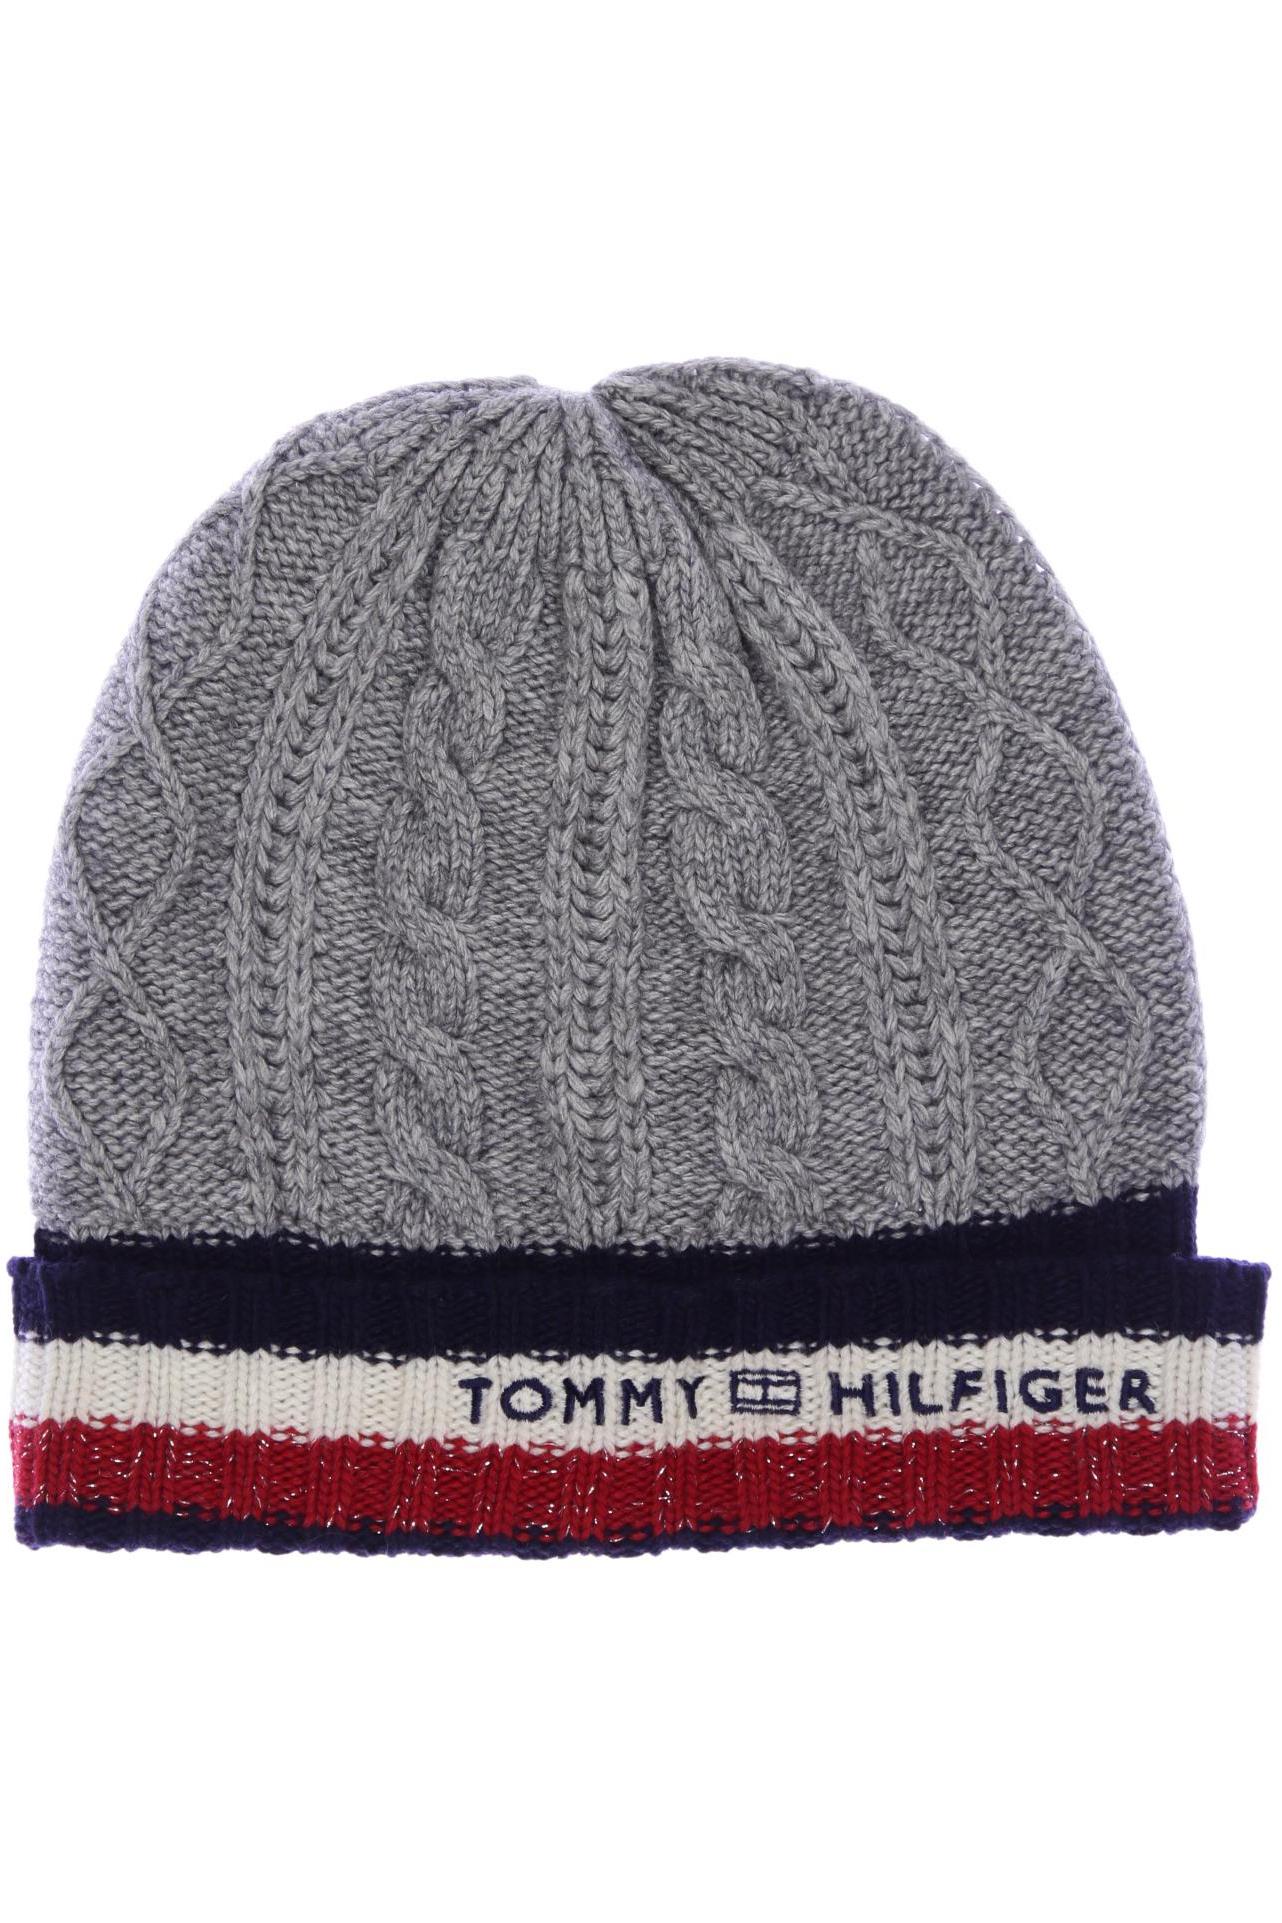 Tommy Hilfiger Damen Hut/Mütze, grau von Tommy Hilfiger